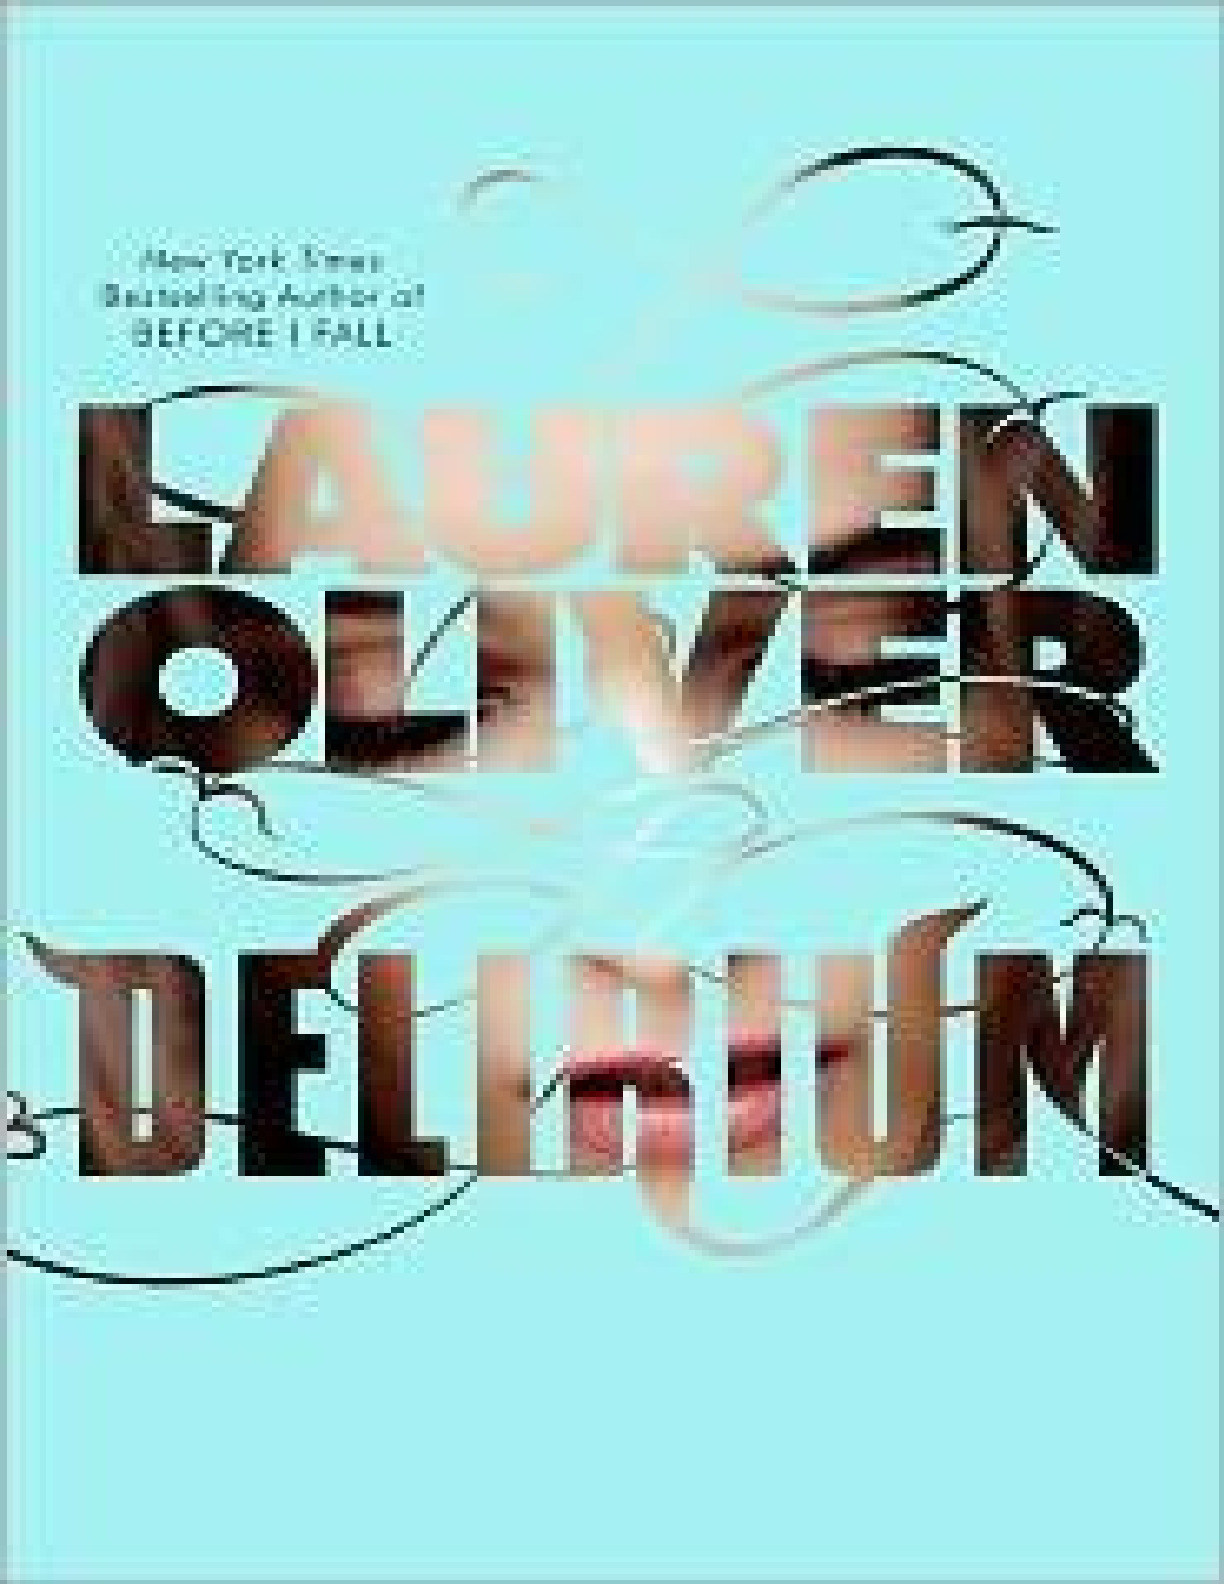 Delirium – Lauren Oliver